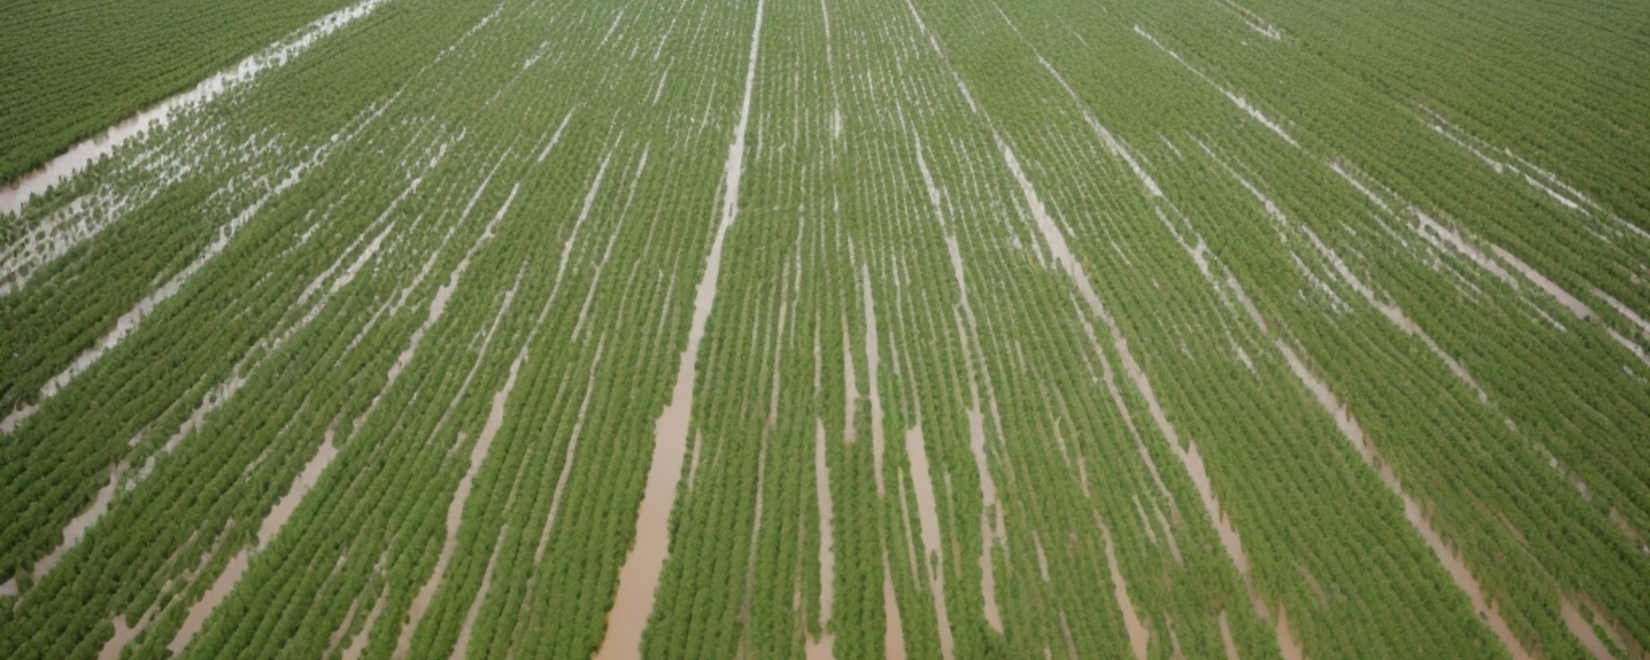 Снижение урожайности кукурузы в Приморье из-за летних паводков: вызовы для местных фермеров